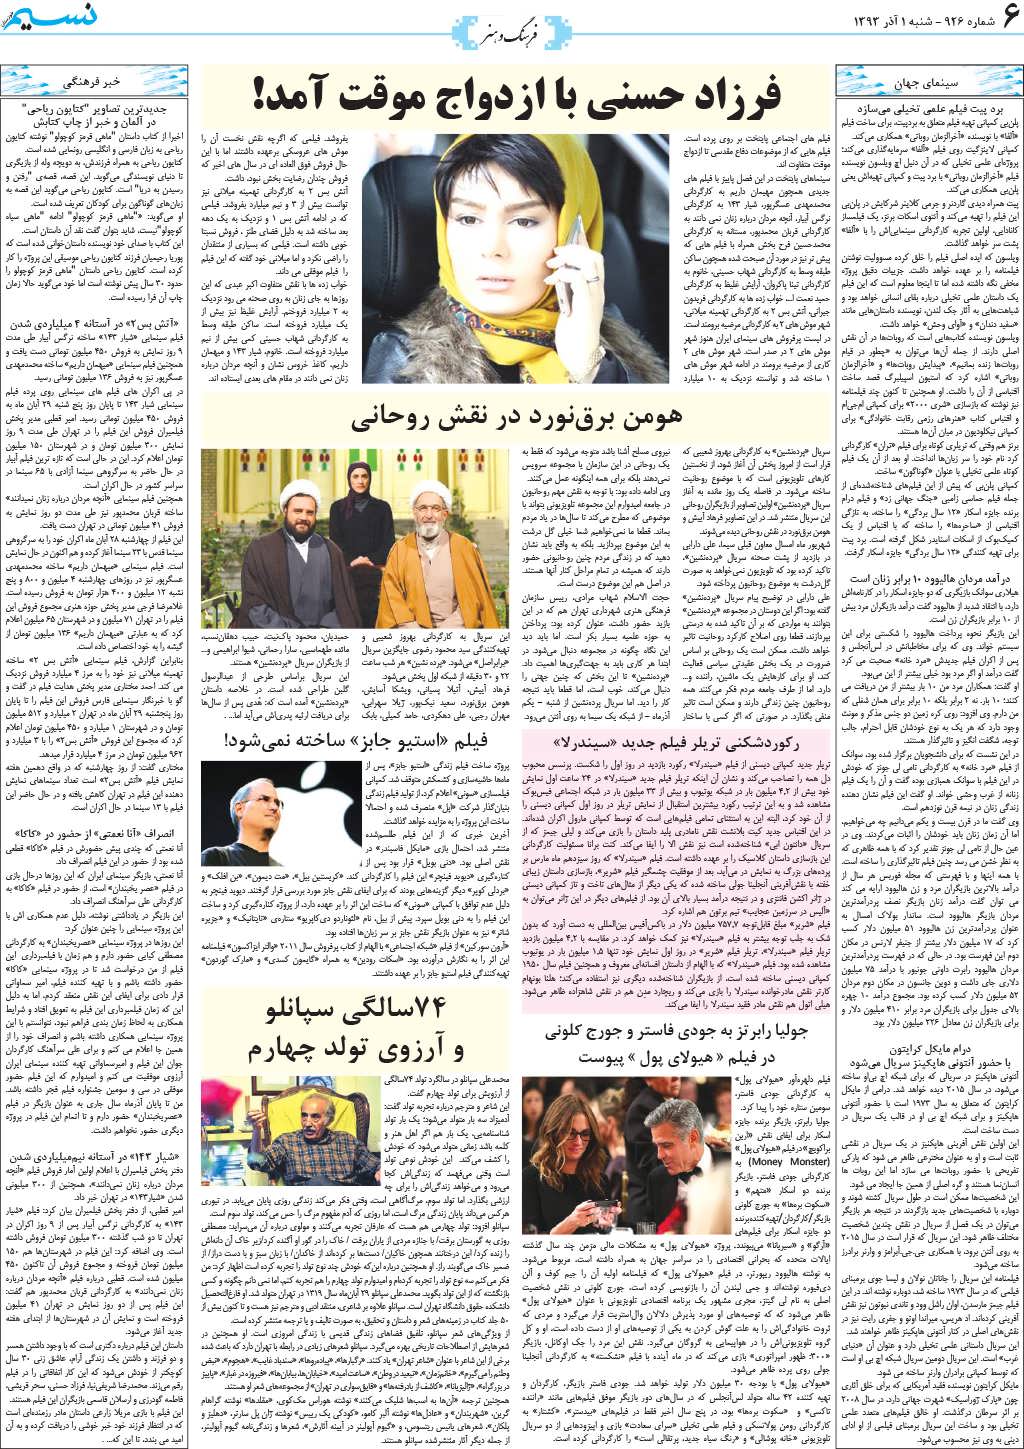 صفحه فرهنگ و هنر روزنامه نسیم شماره 926